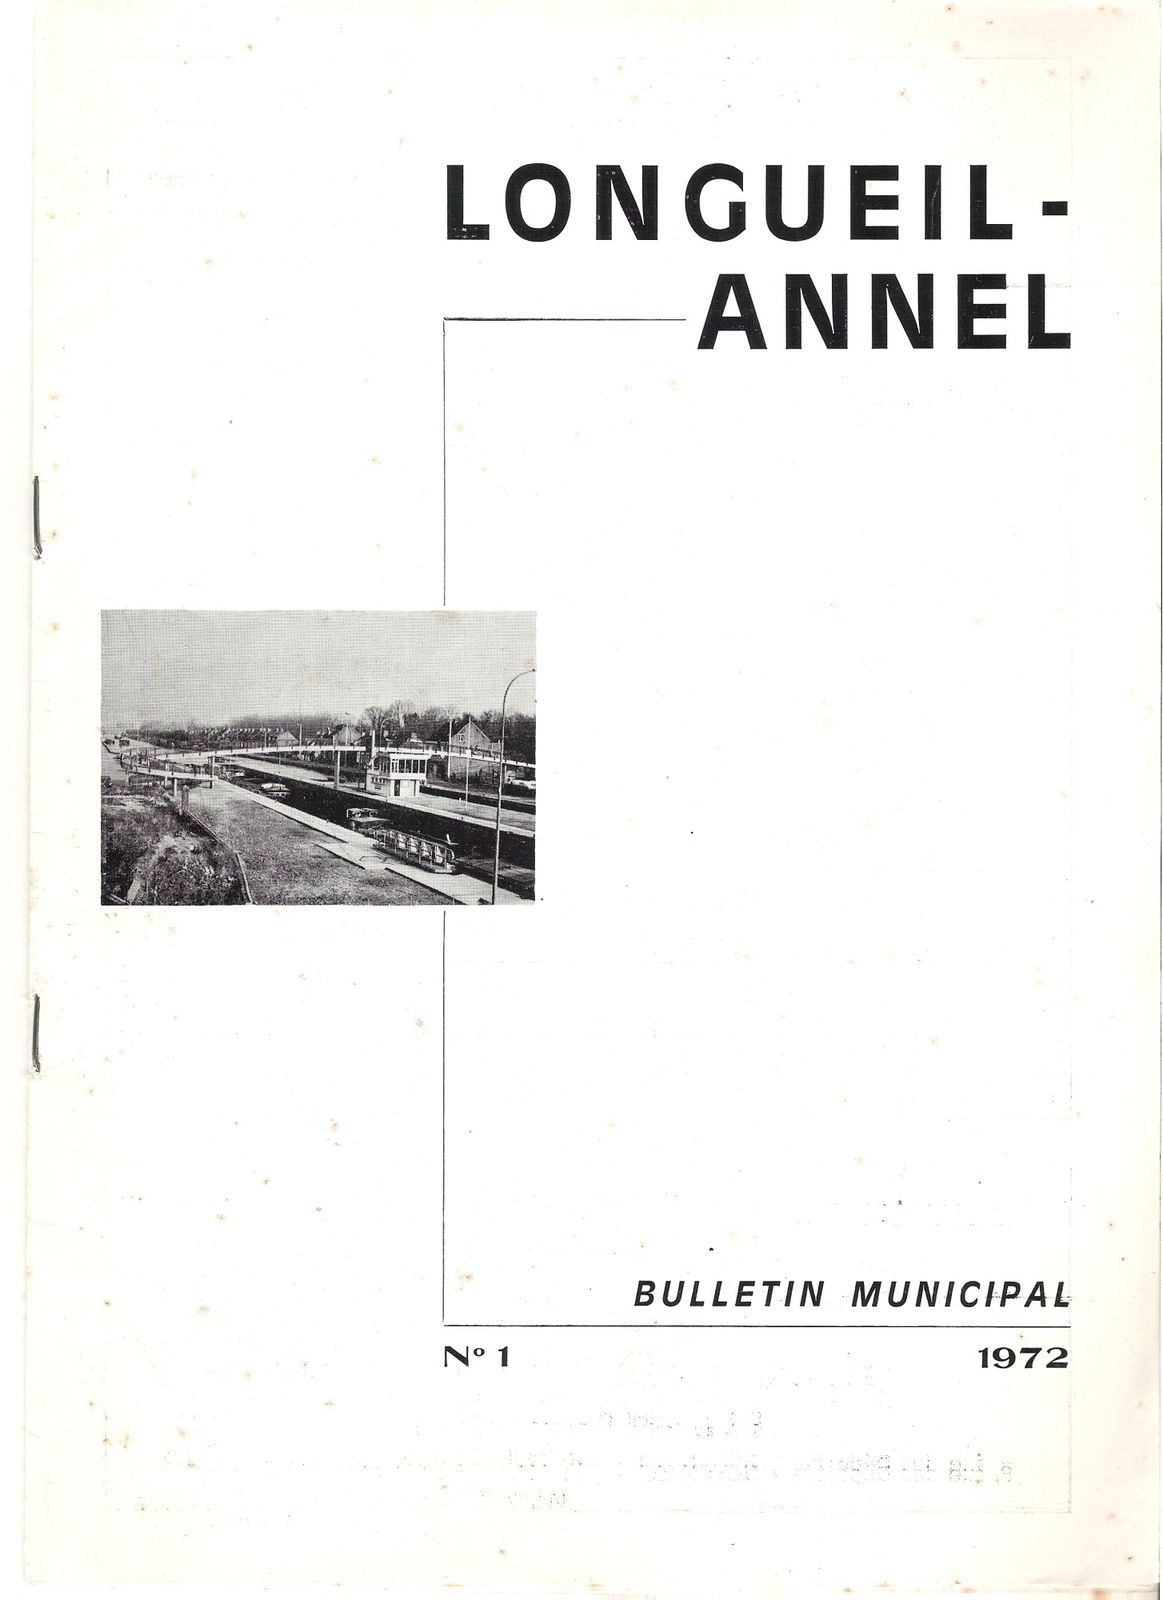 Album - le village de Longueil-Annel (Oise), les maires, le conseil municipal et ses manidestations